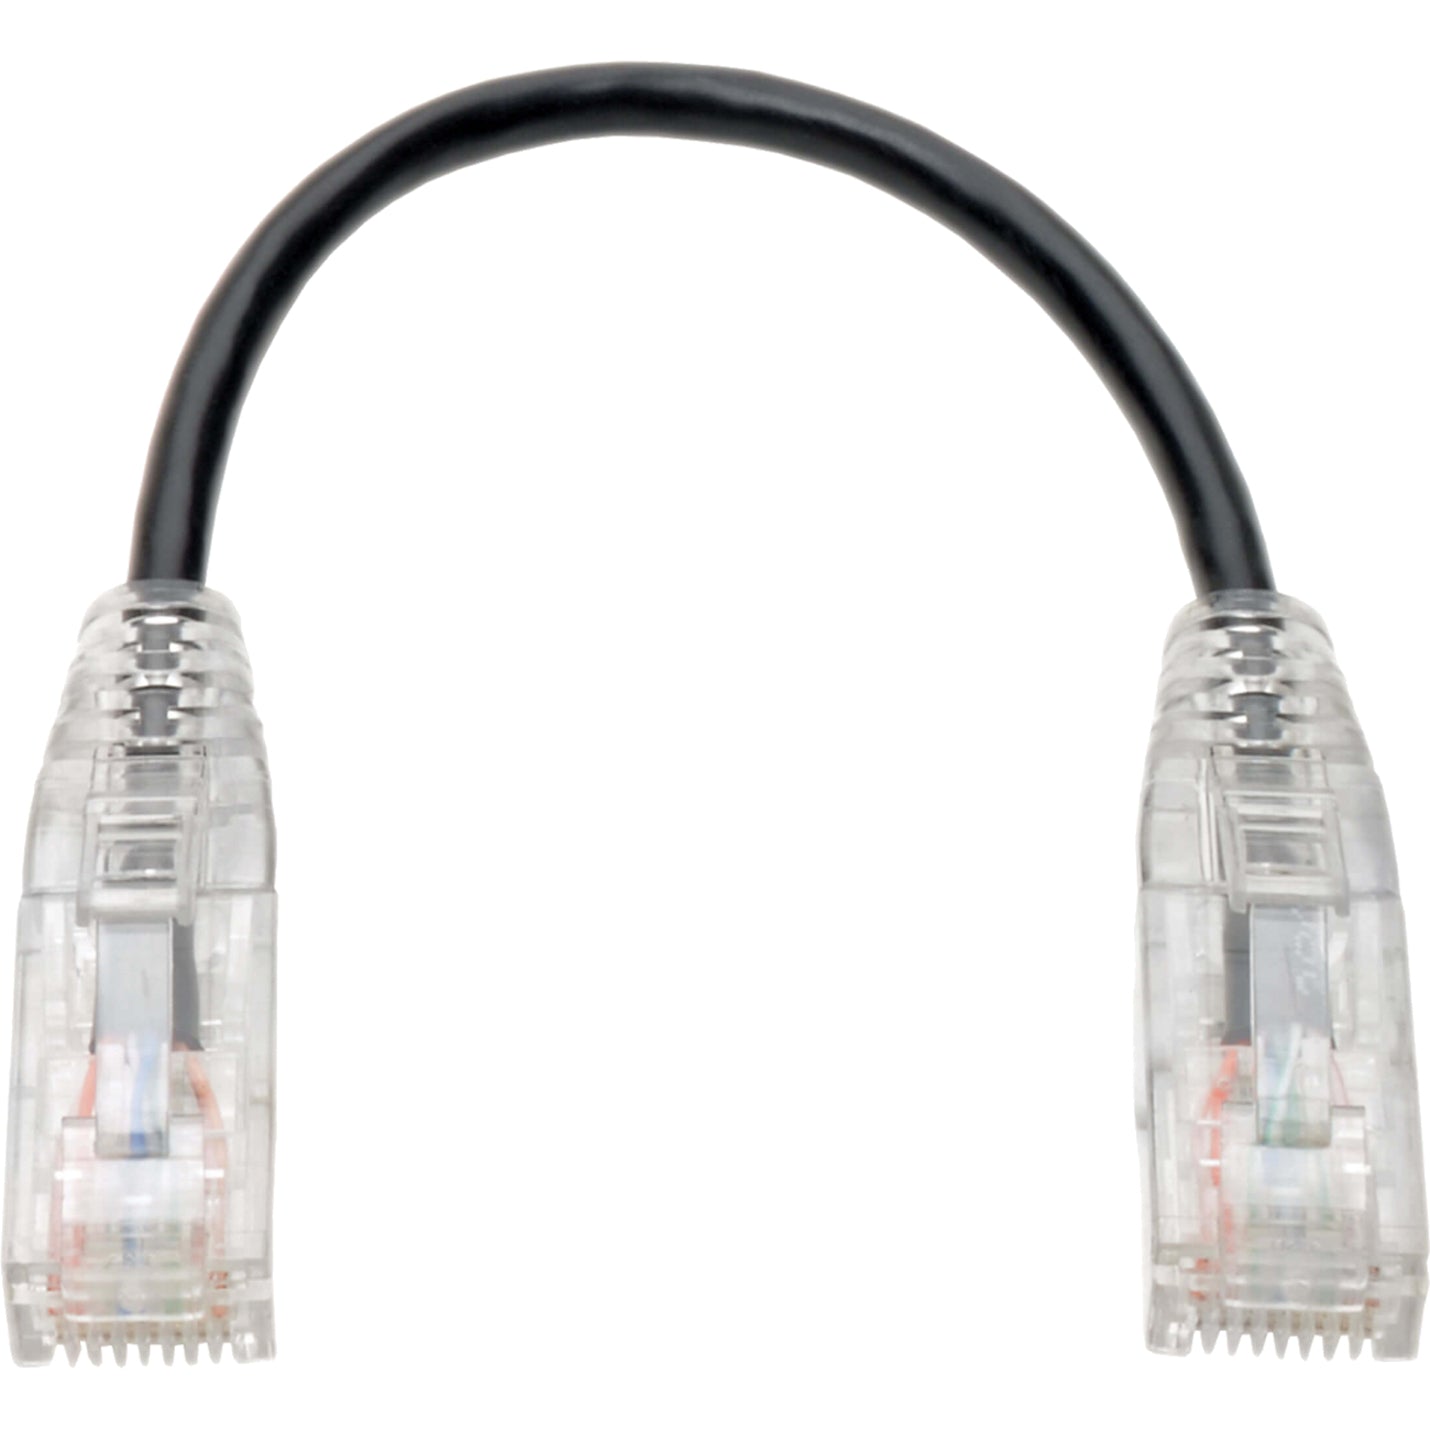 Tripp Lite N201-S8N-BK Cat6 UTP Patch Cable (RJ45) - M/M, Gigabit, Snagless, Molded, Slim, Black, 8 in